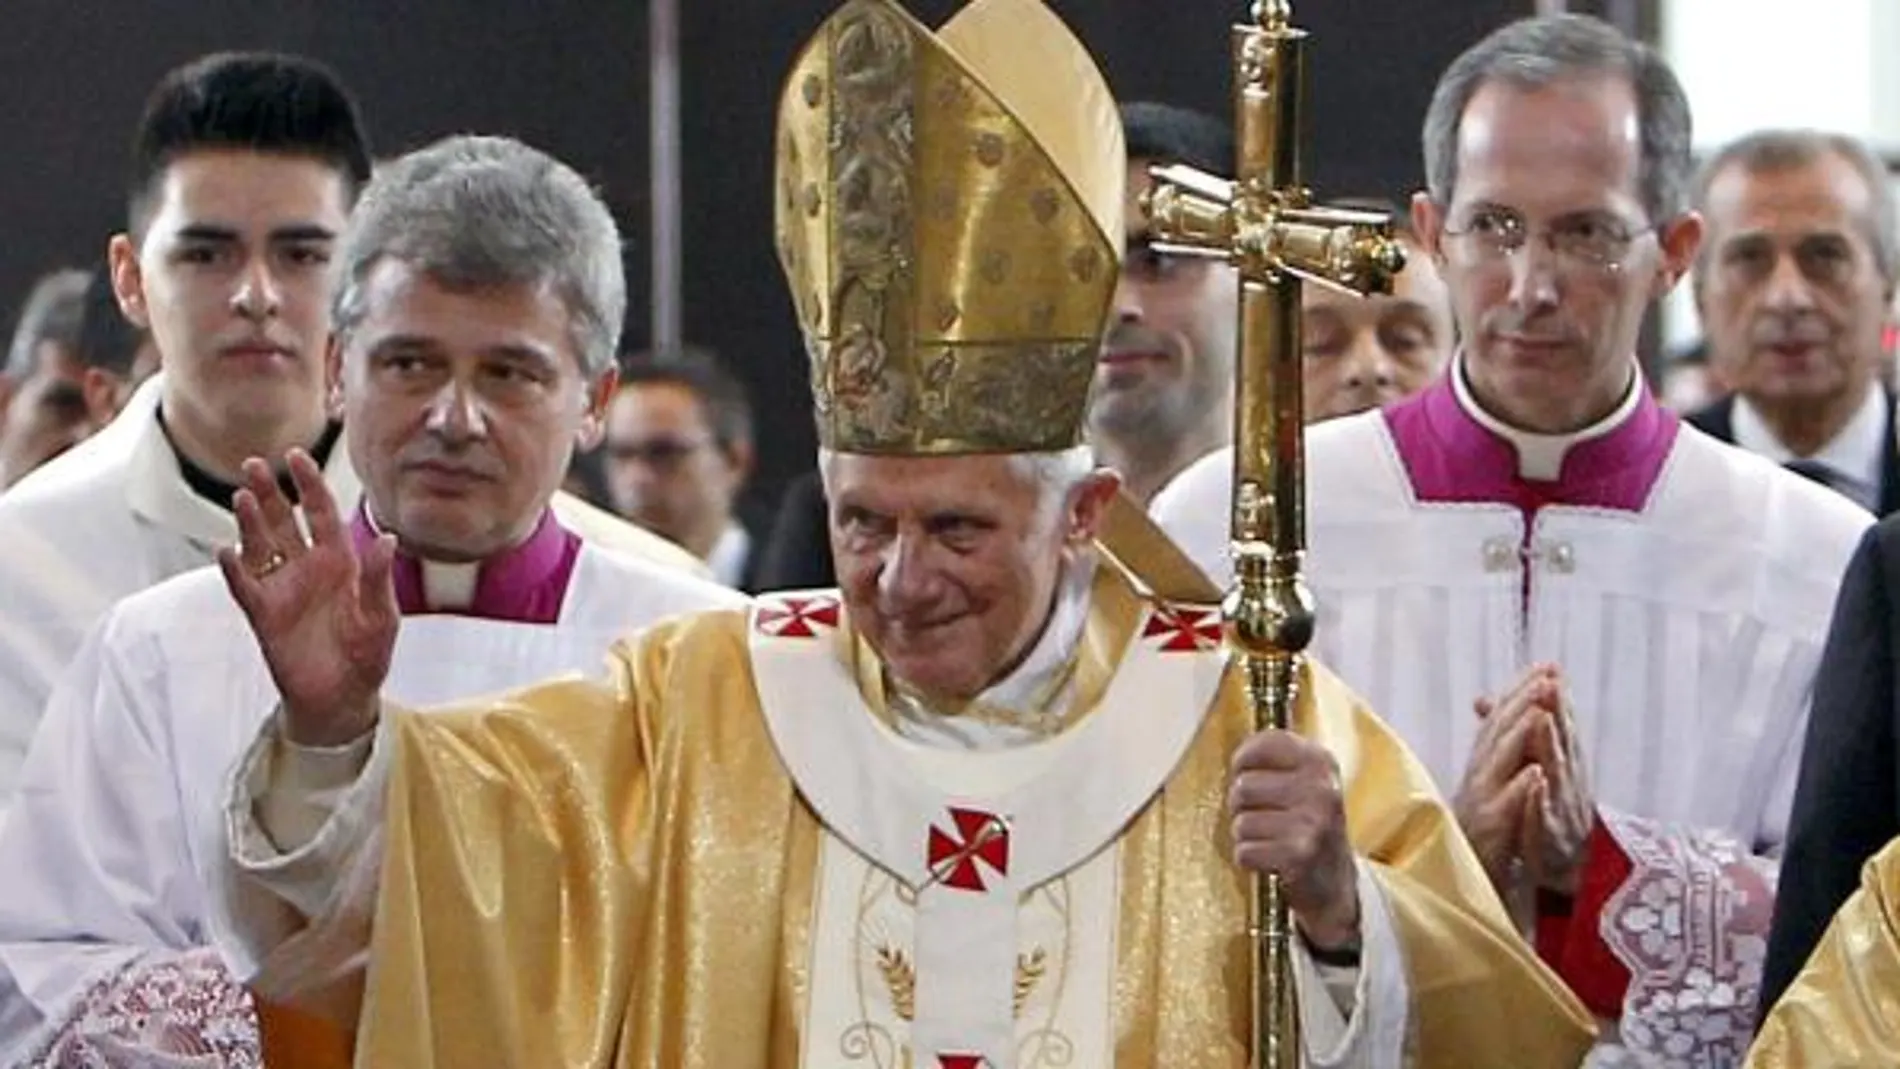 Benedicto XVI consagra la «Sagrada Familia», la catedral del siglo XXI